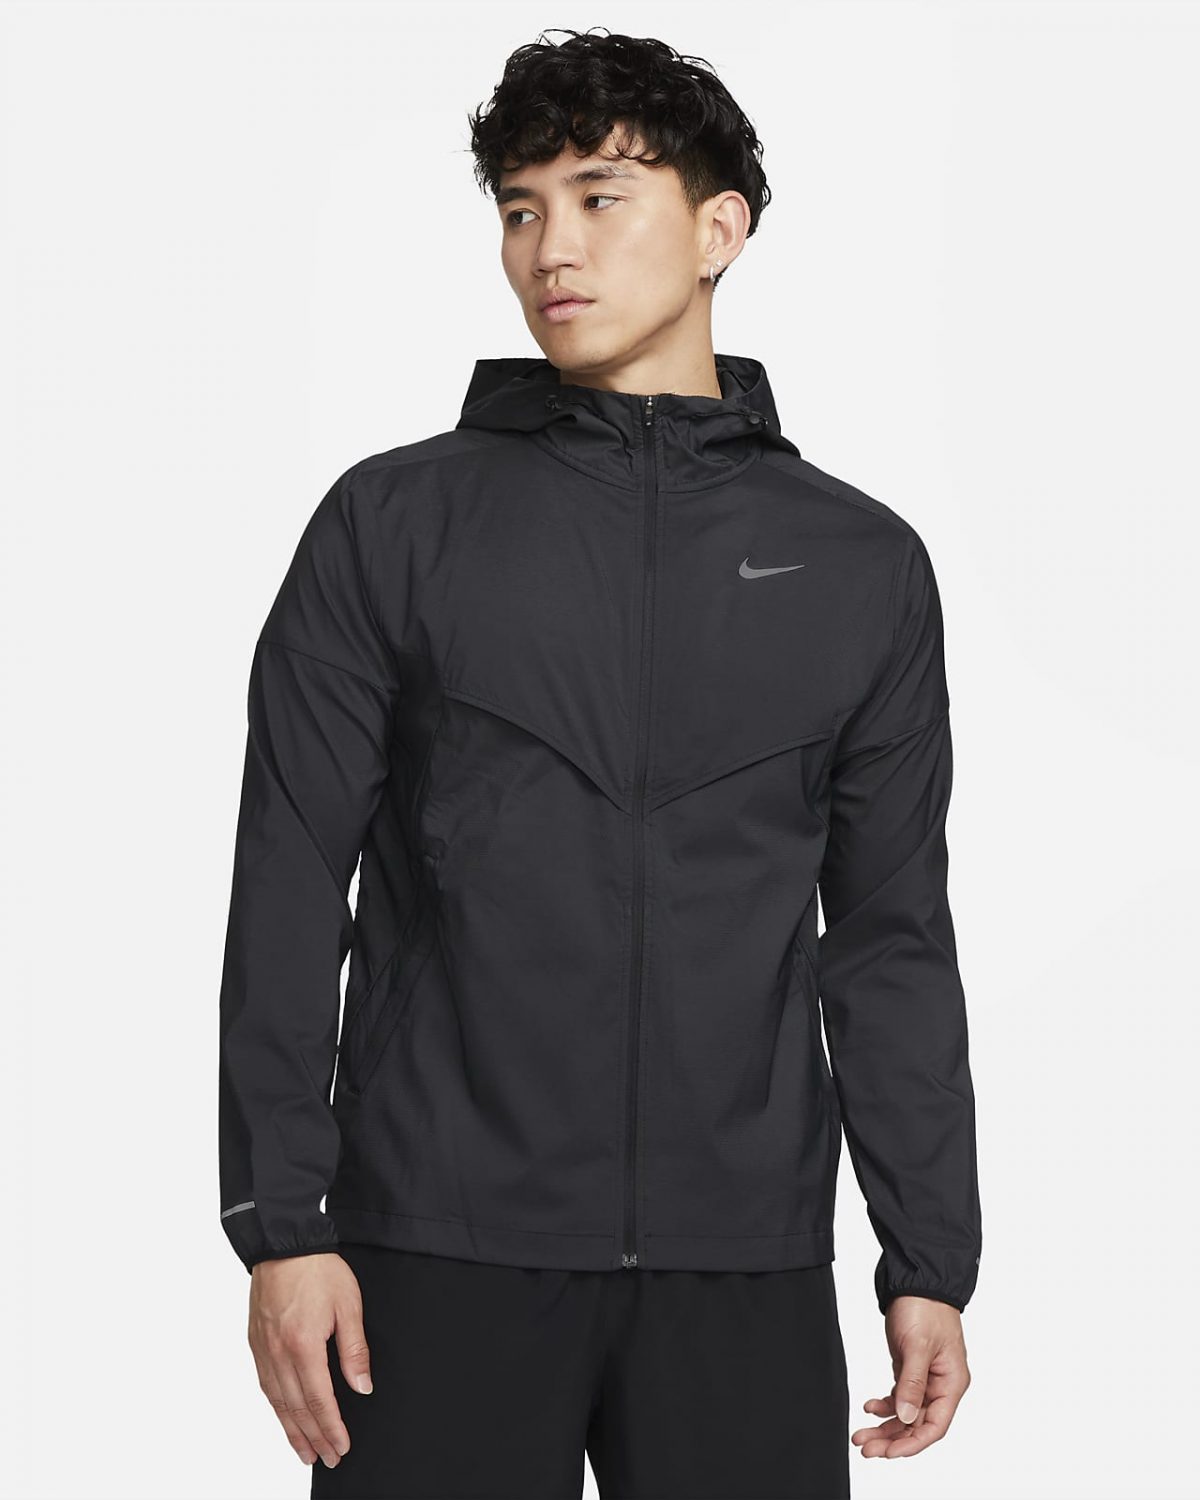 Мужская куртка Nike Windrunner фото